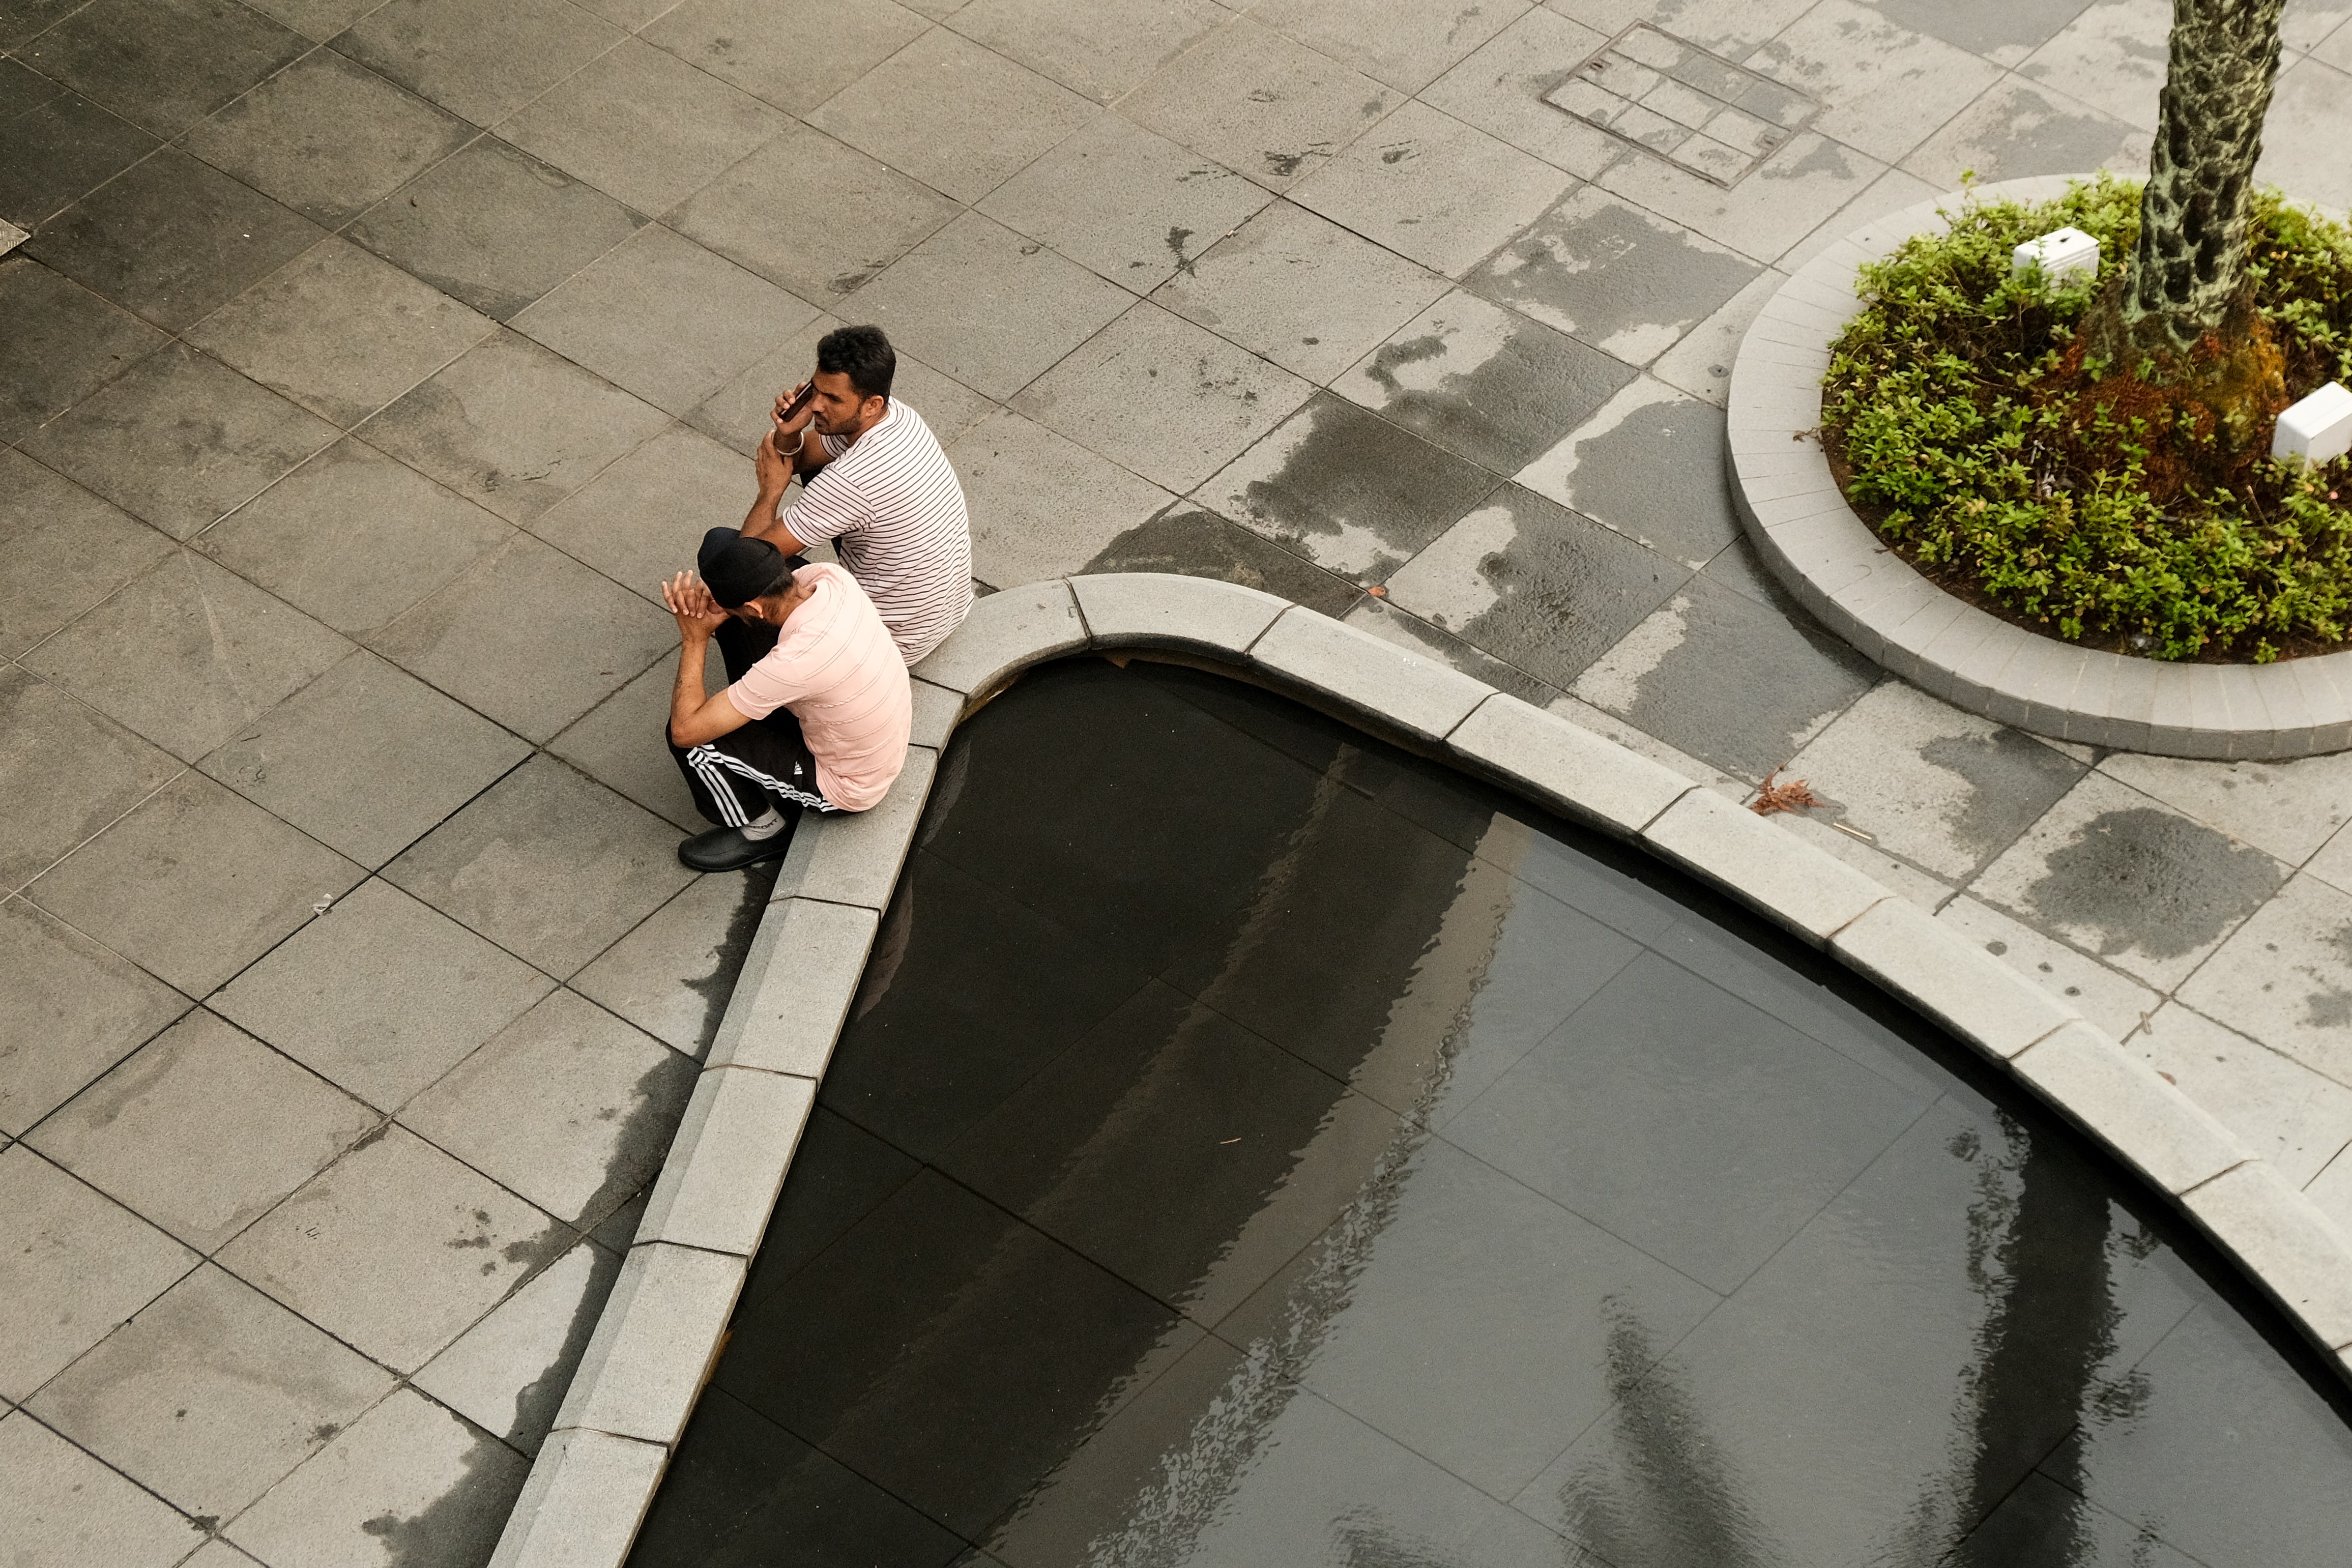 싱가포르의 비보 시티에서 두 사람이 앉아 있는 모습